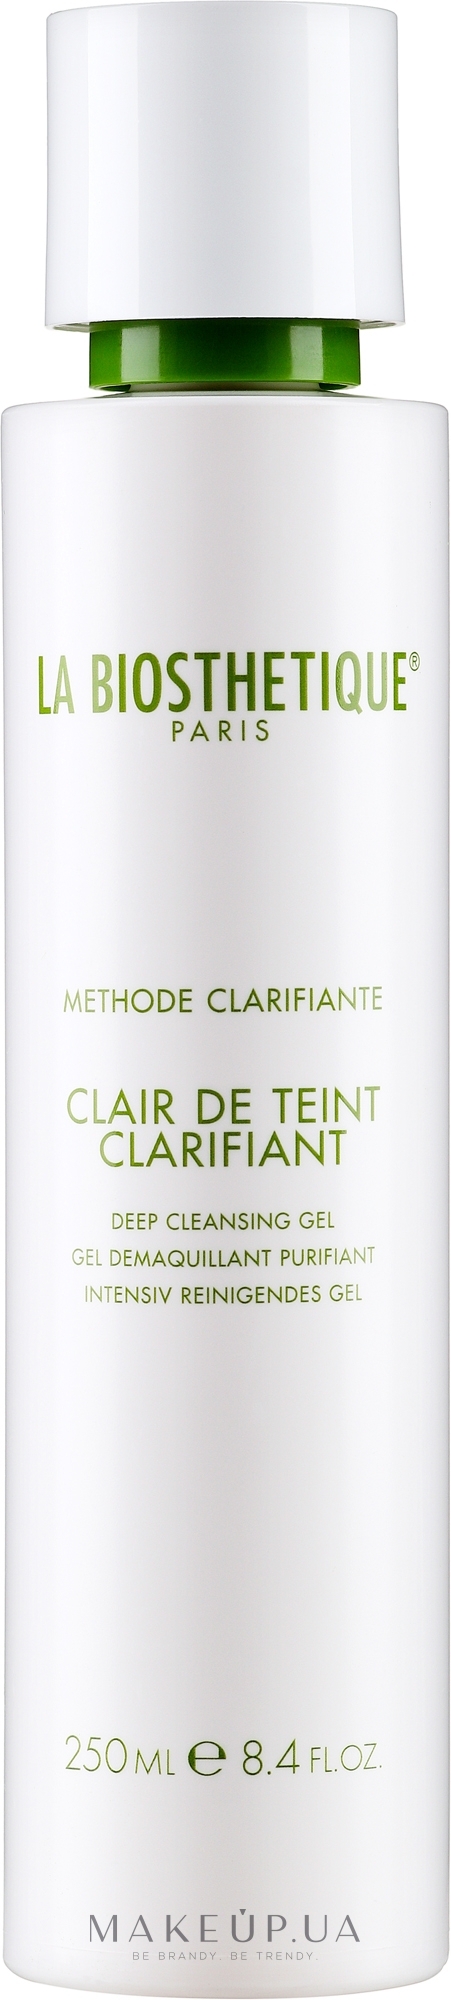 Очищающий гель для лица - La Biosthetique Methode Clarifiante Clair de Teint Purifian — фото 250ml